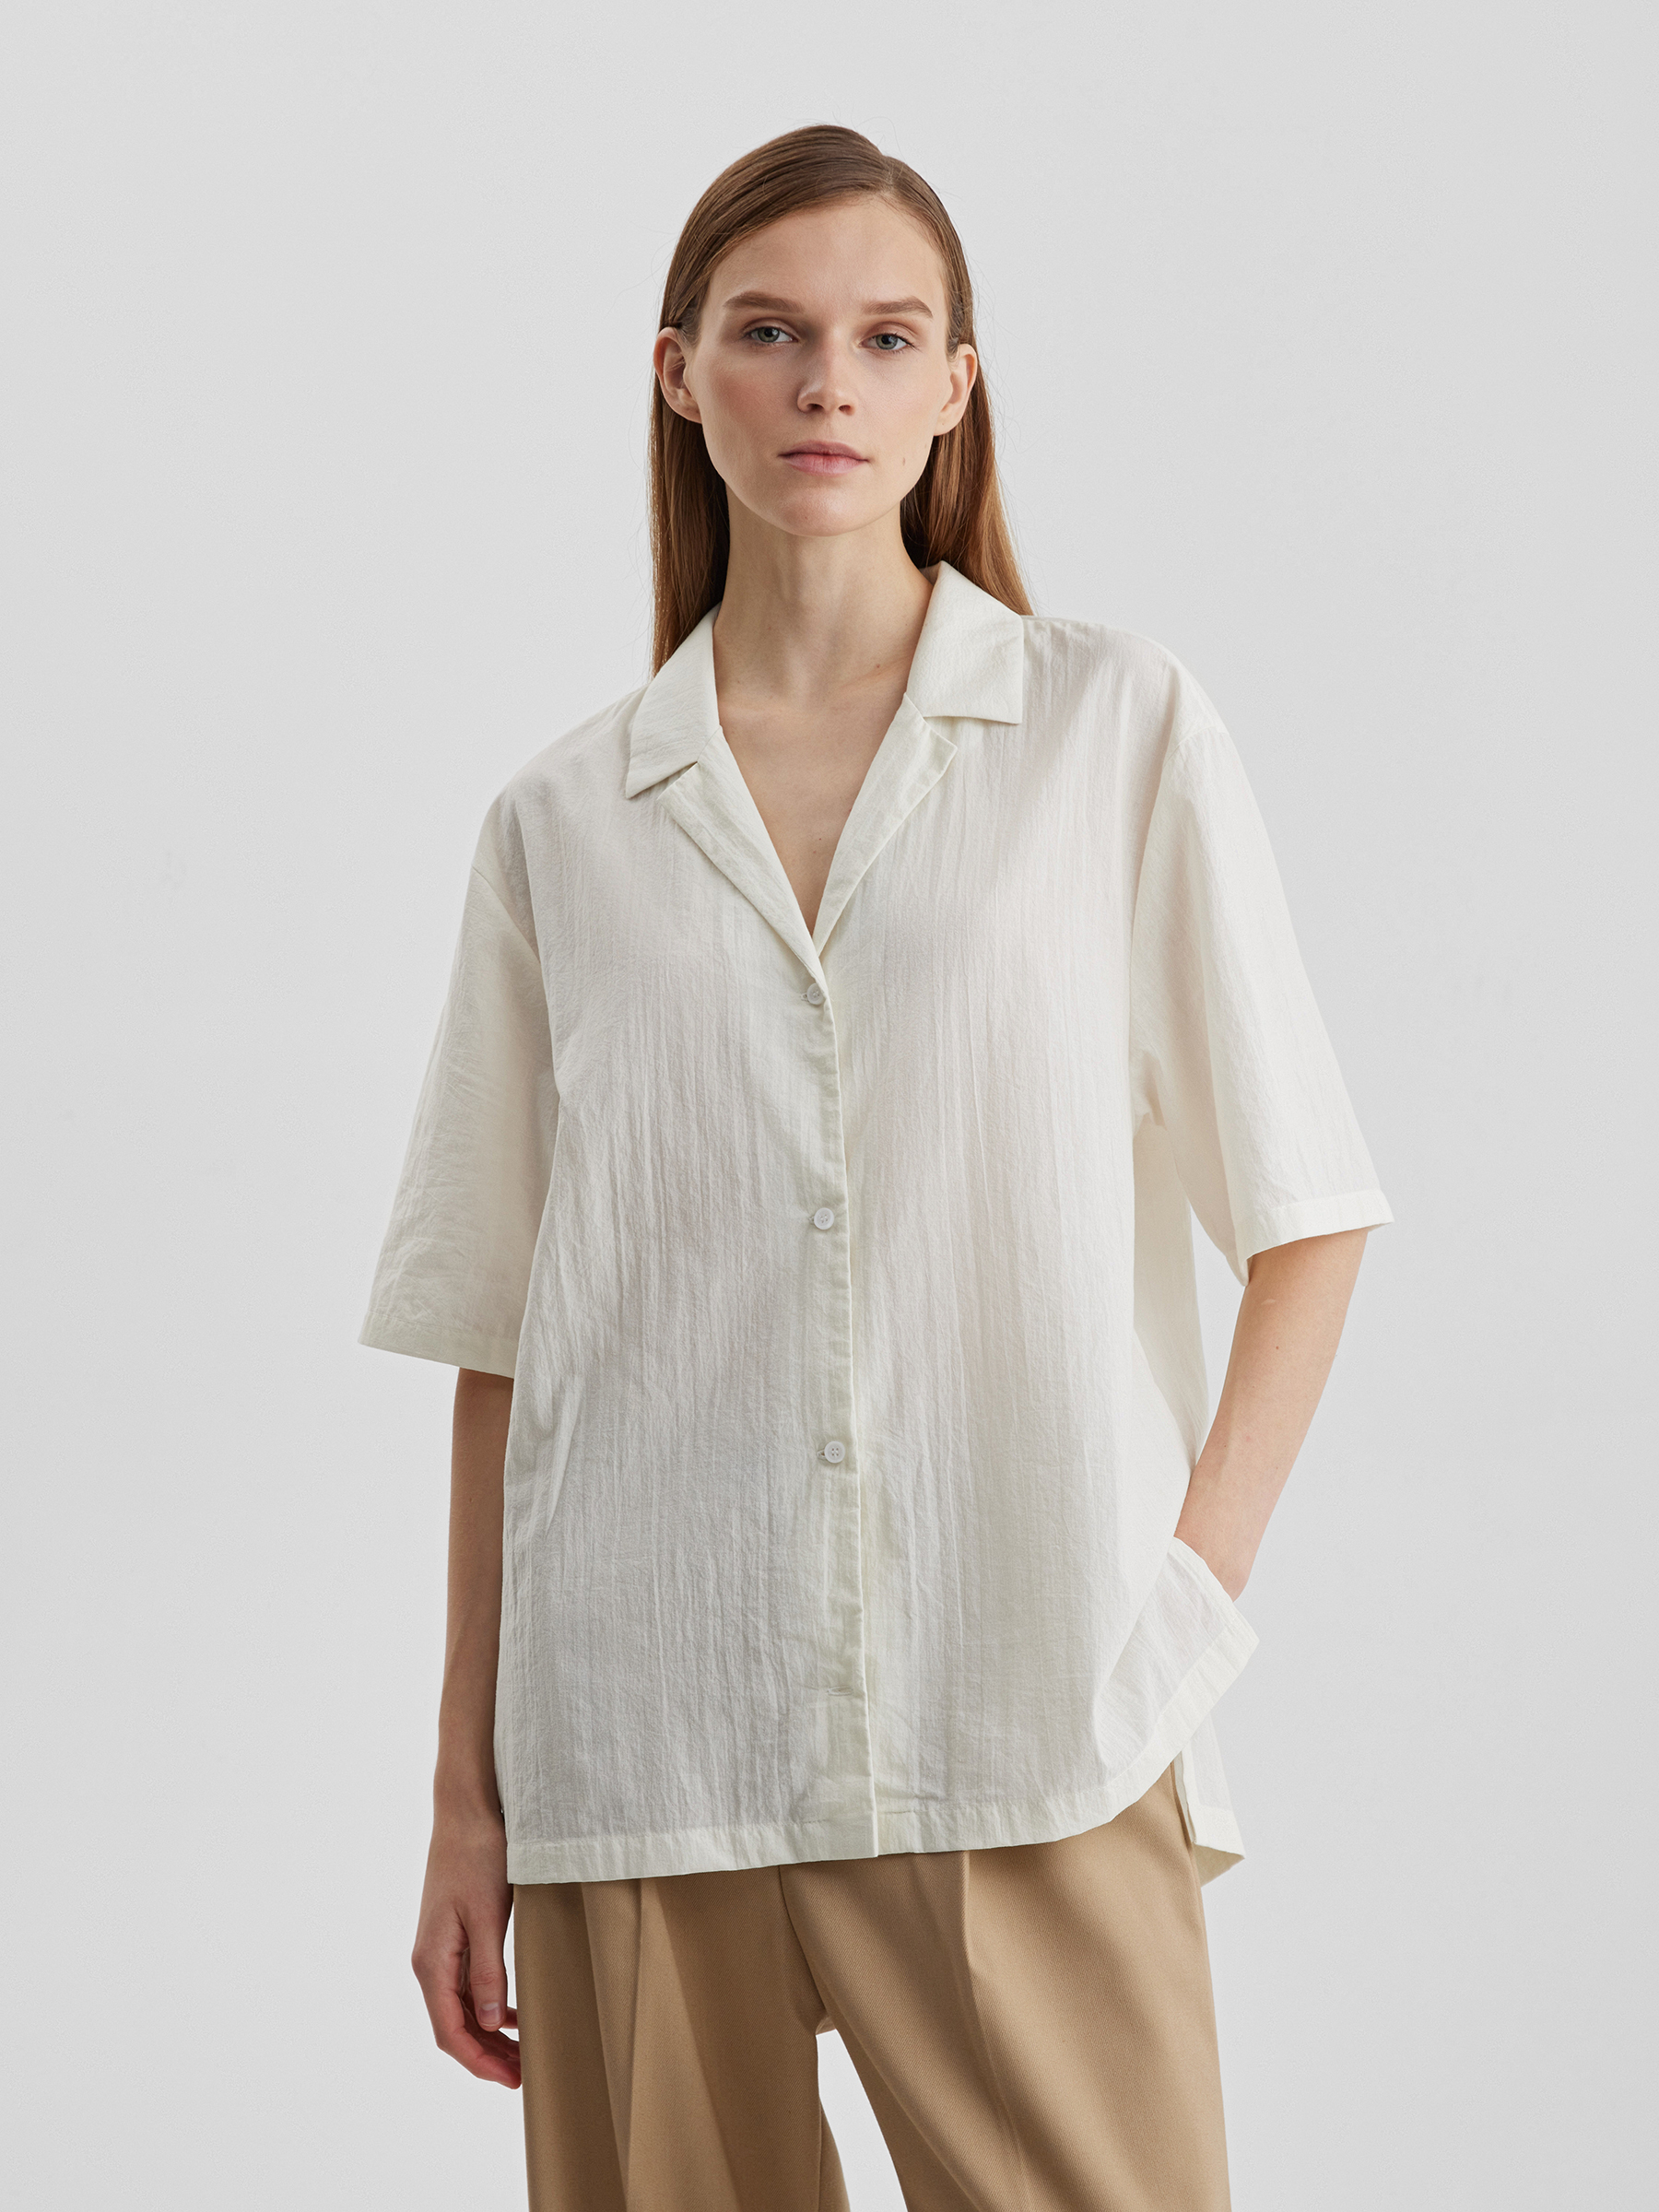 Рубашка женская с коротким рукавом из лёгкого хлопка, цвет – молочный женская рубашка из шелка mulberry с отложным воротником на пуговицах